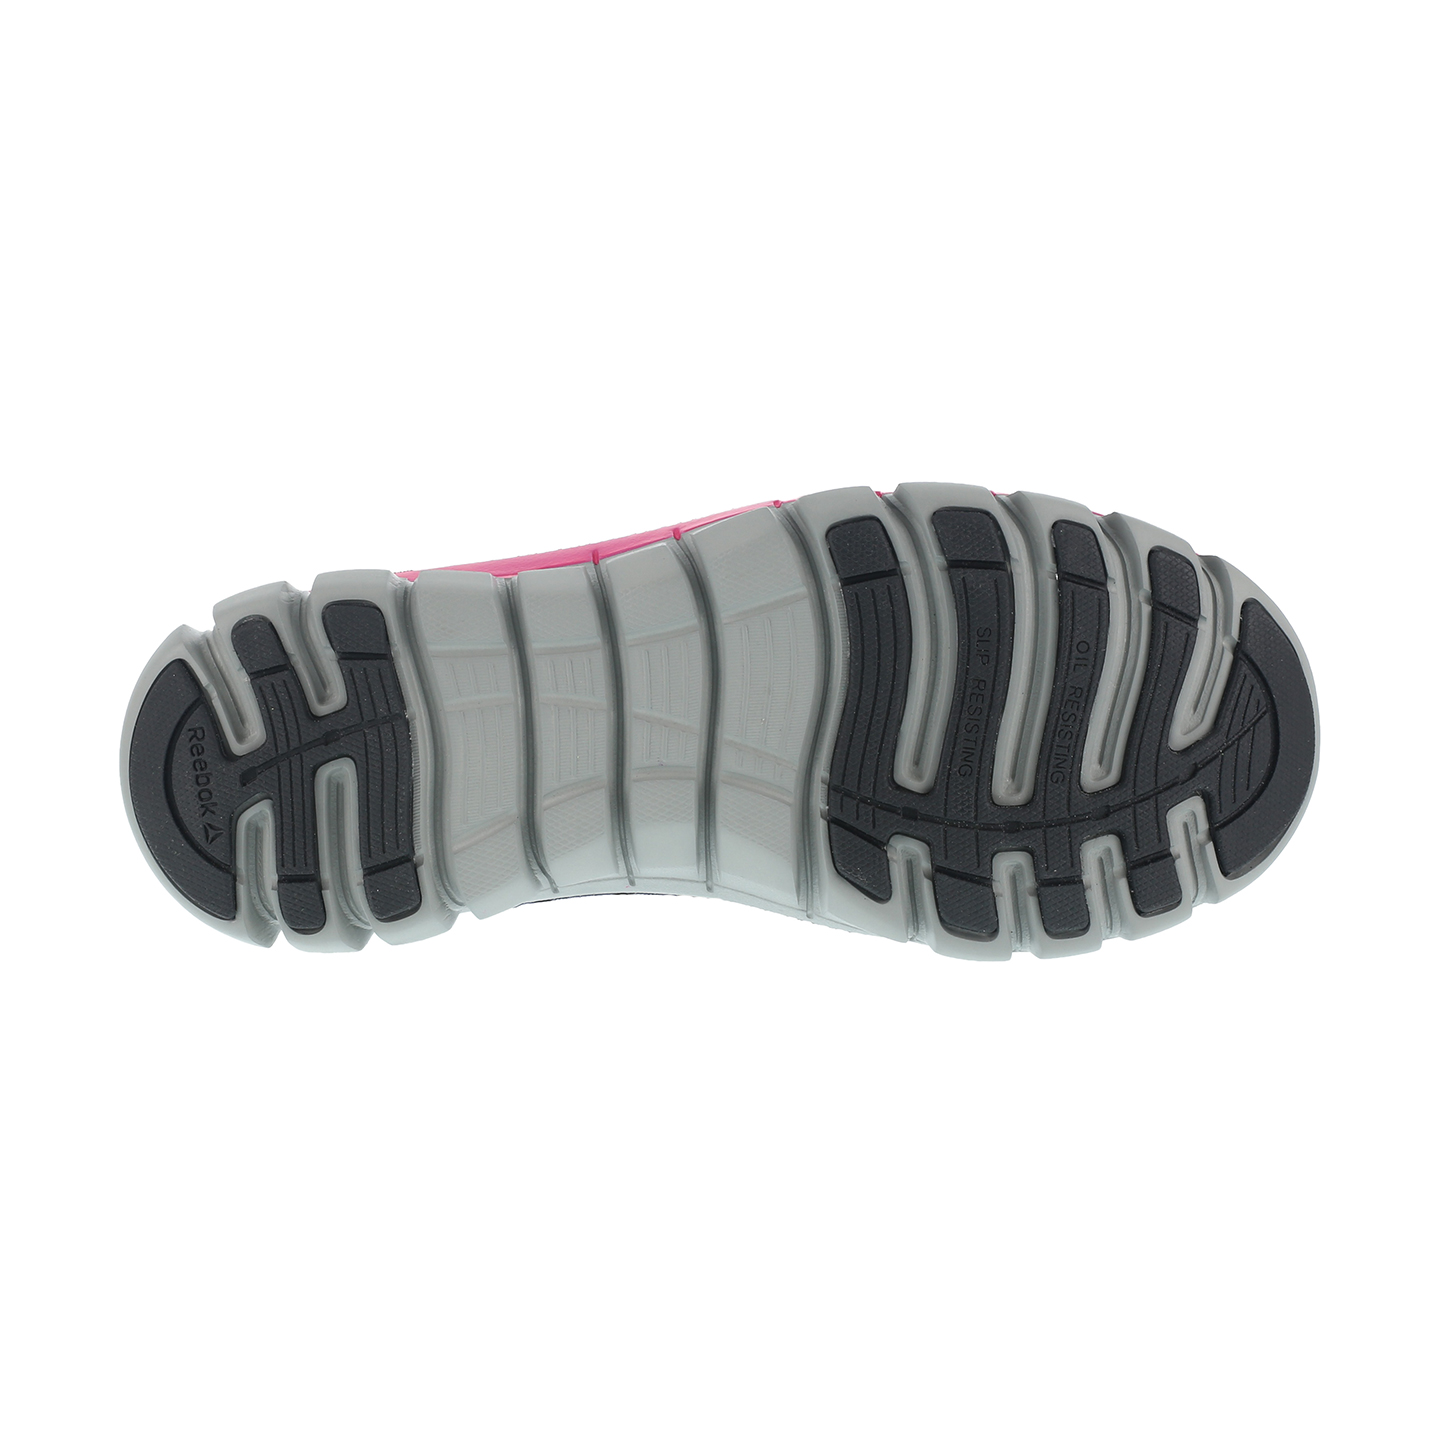 Reebok Sublite Cushion Womens Aluminum Toe Electrical Hazard Athletic Work Shoe Size 10.5(M) - image 2 of 3